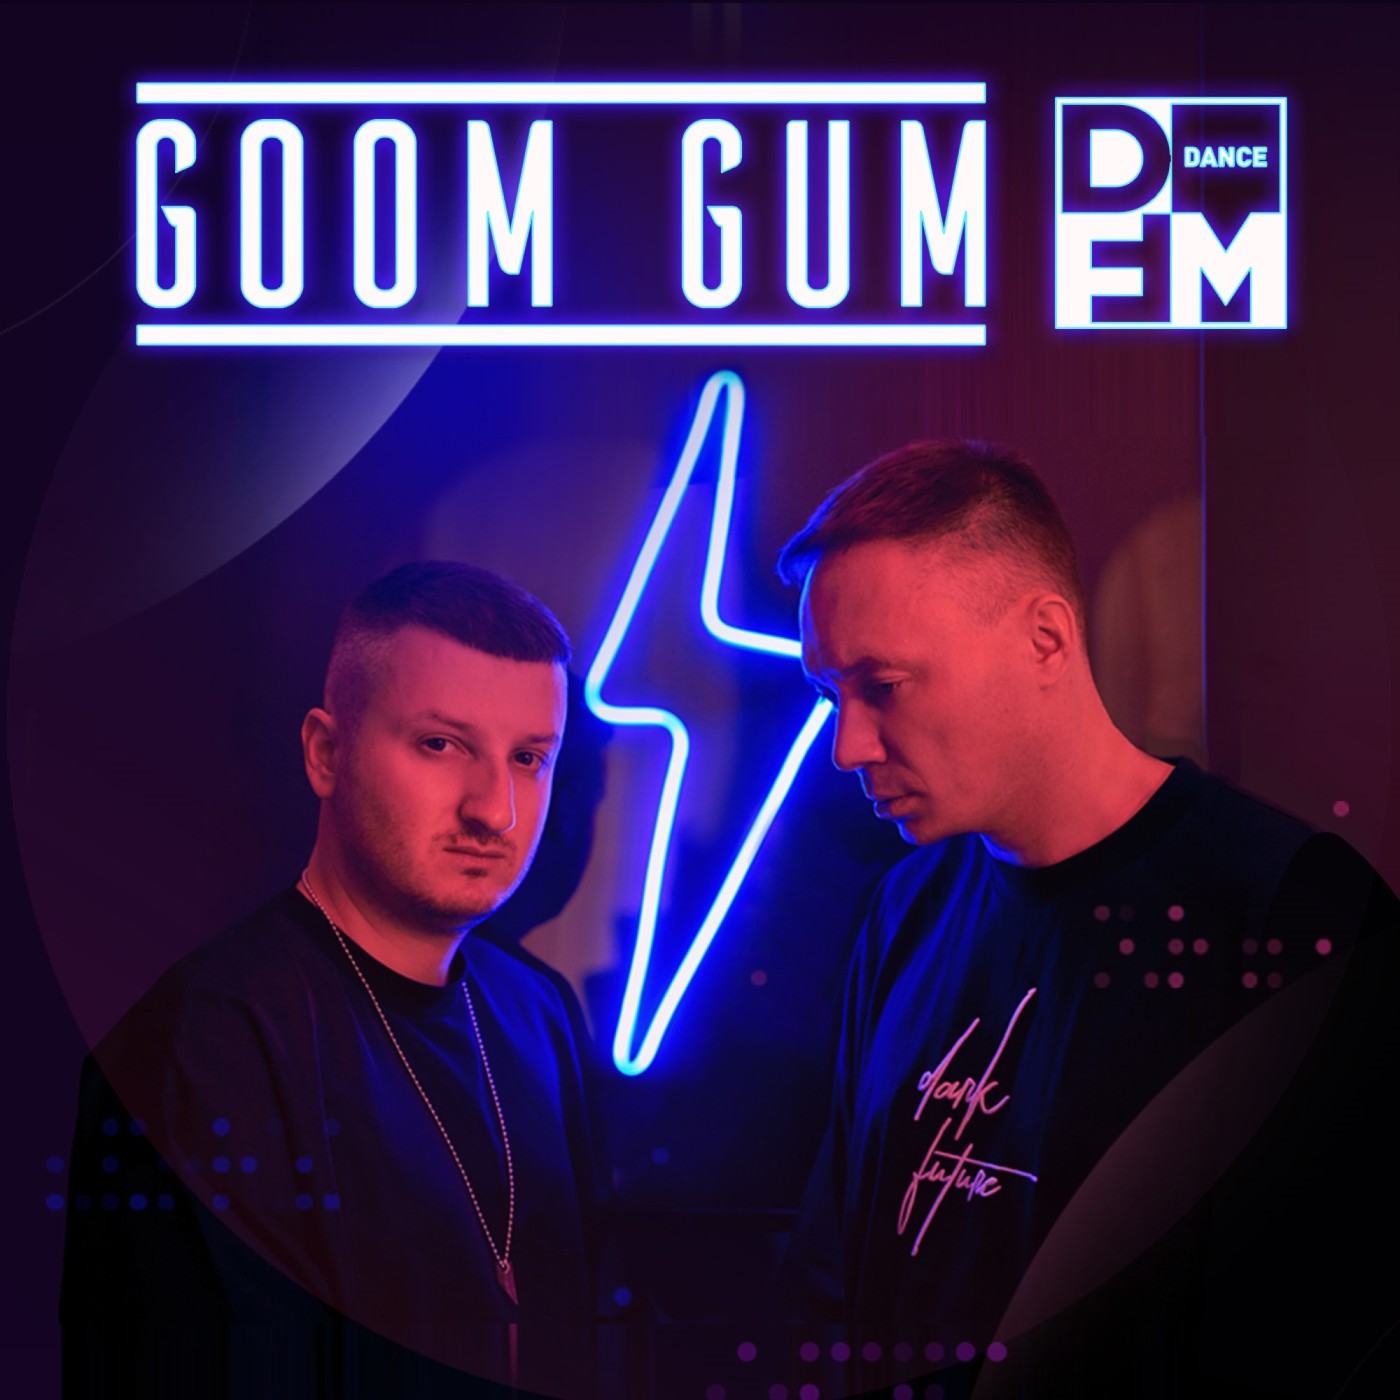 Goom Gum on DFM (2022-01-16) #96